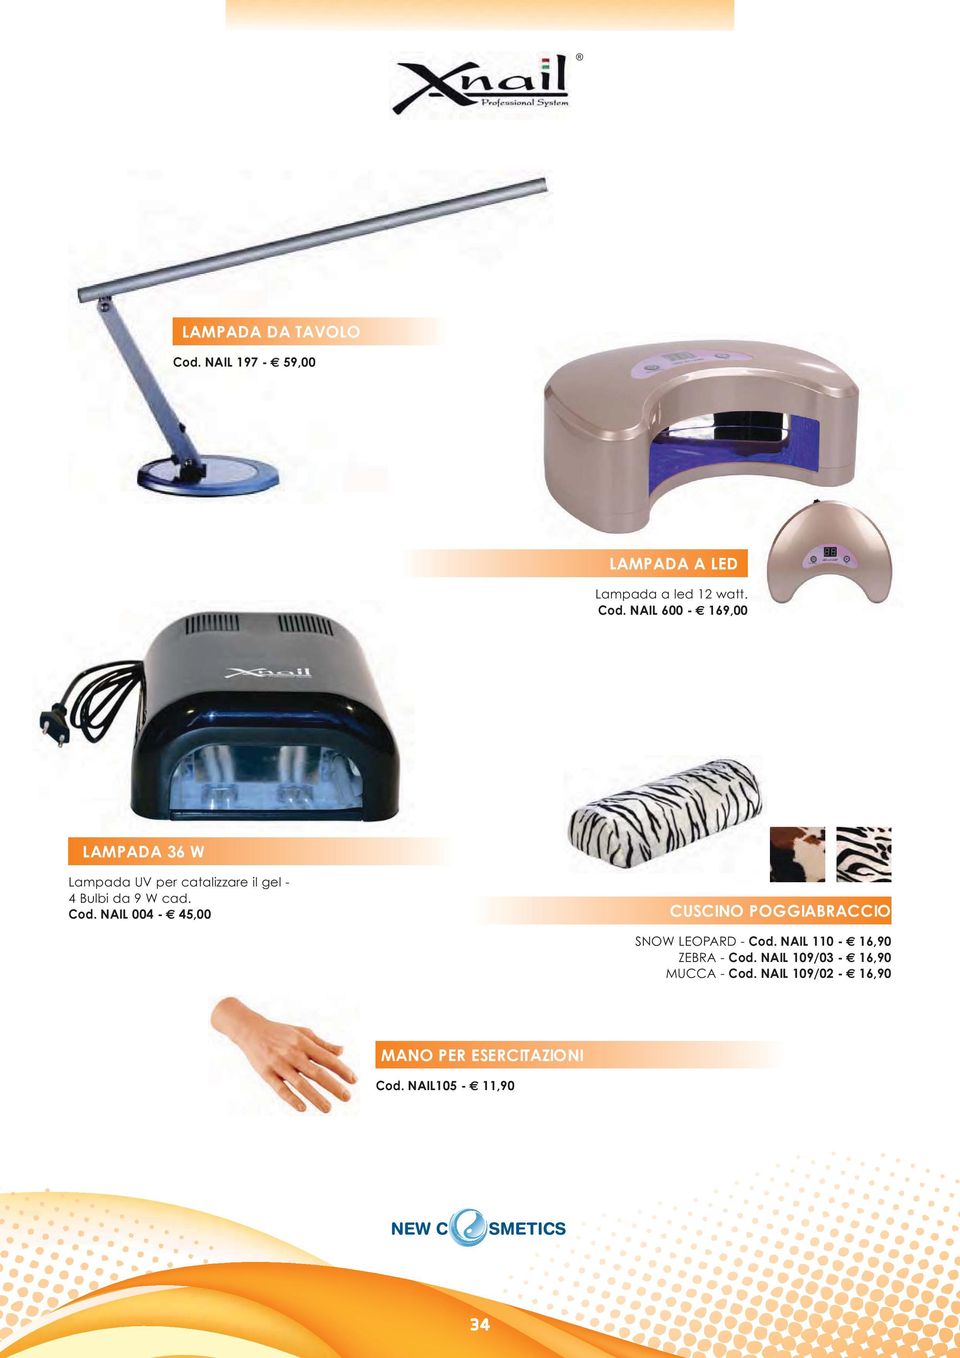 NAIL 600-169,00 LAMPADA 36 W Lampada UV per catalizzare il gel - 4 Bulbi da 9 W cad.